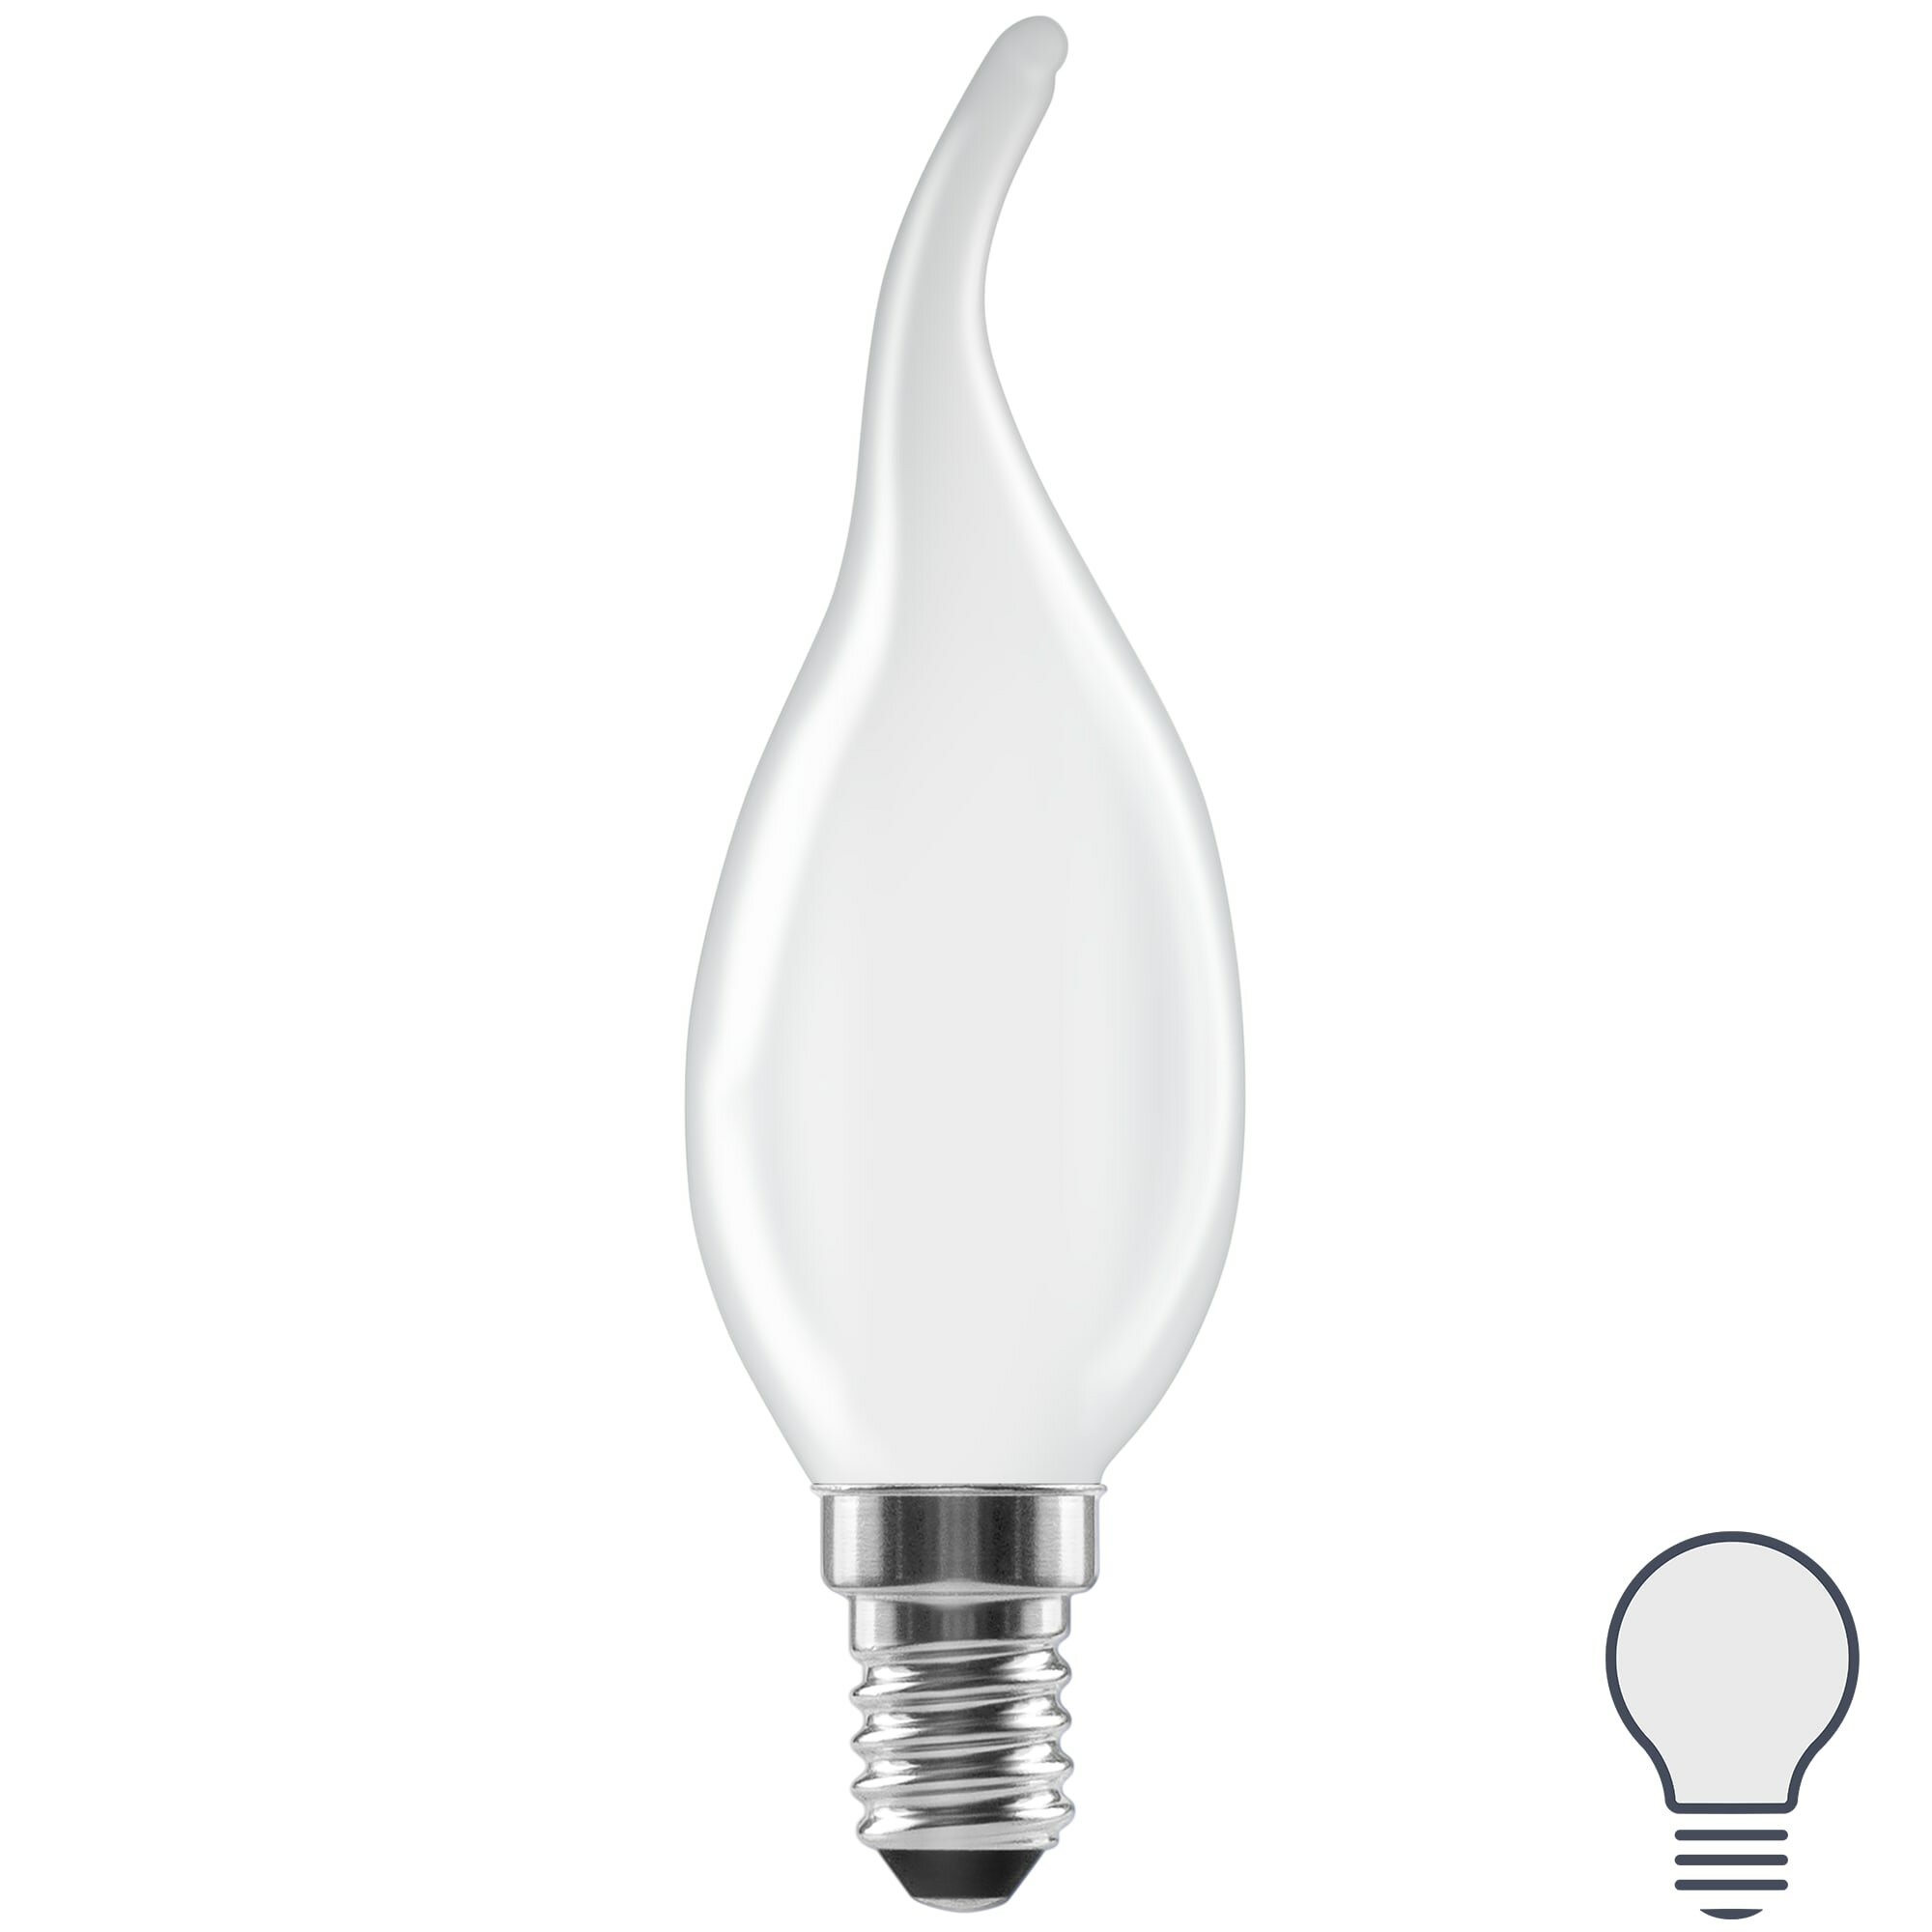 Лампа светодиодная Lexman E14 220-240 В 5 Вт свеча на ветру матовая 600 лм нейтральный белый свет. Набор из 2 шт.